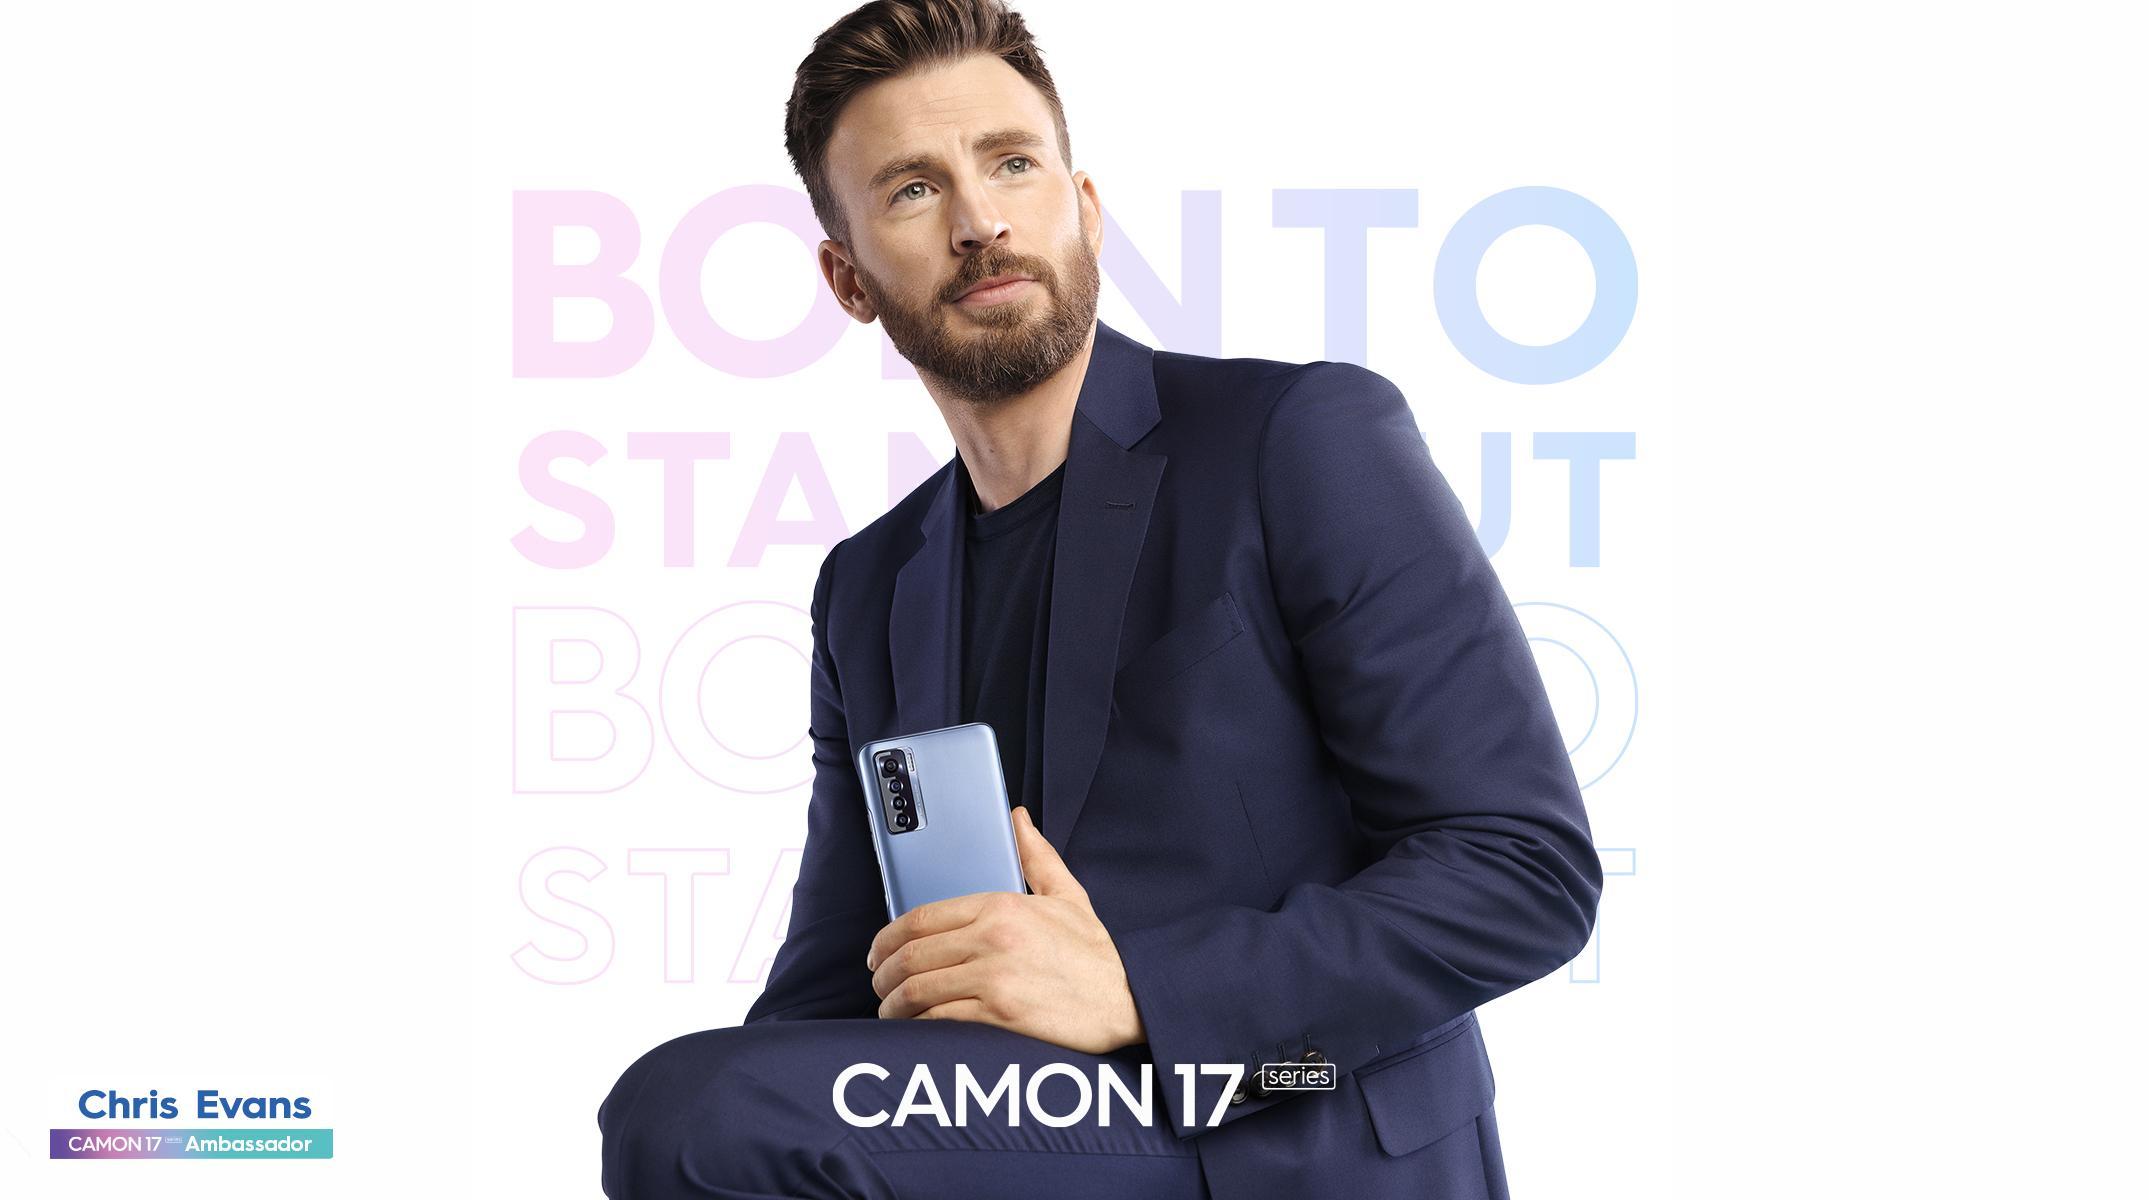 TECNO reveals superhero Chris Evans as brand ambassador for the new Camon 17 series